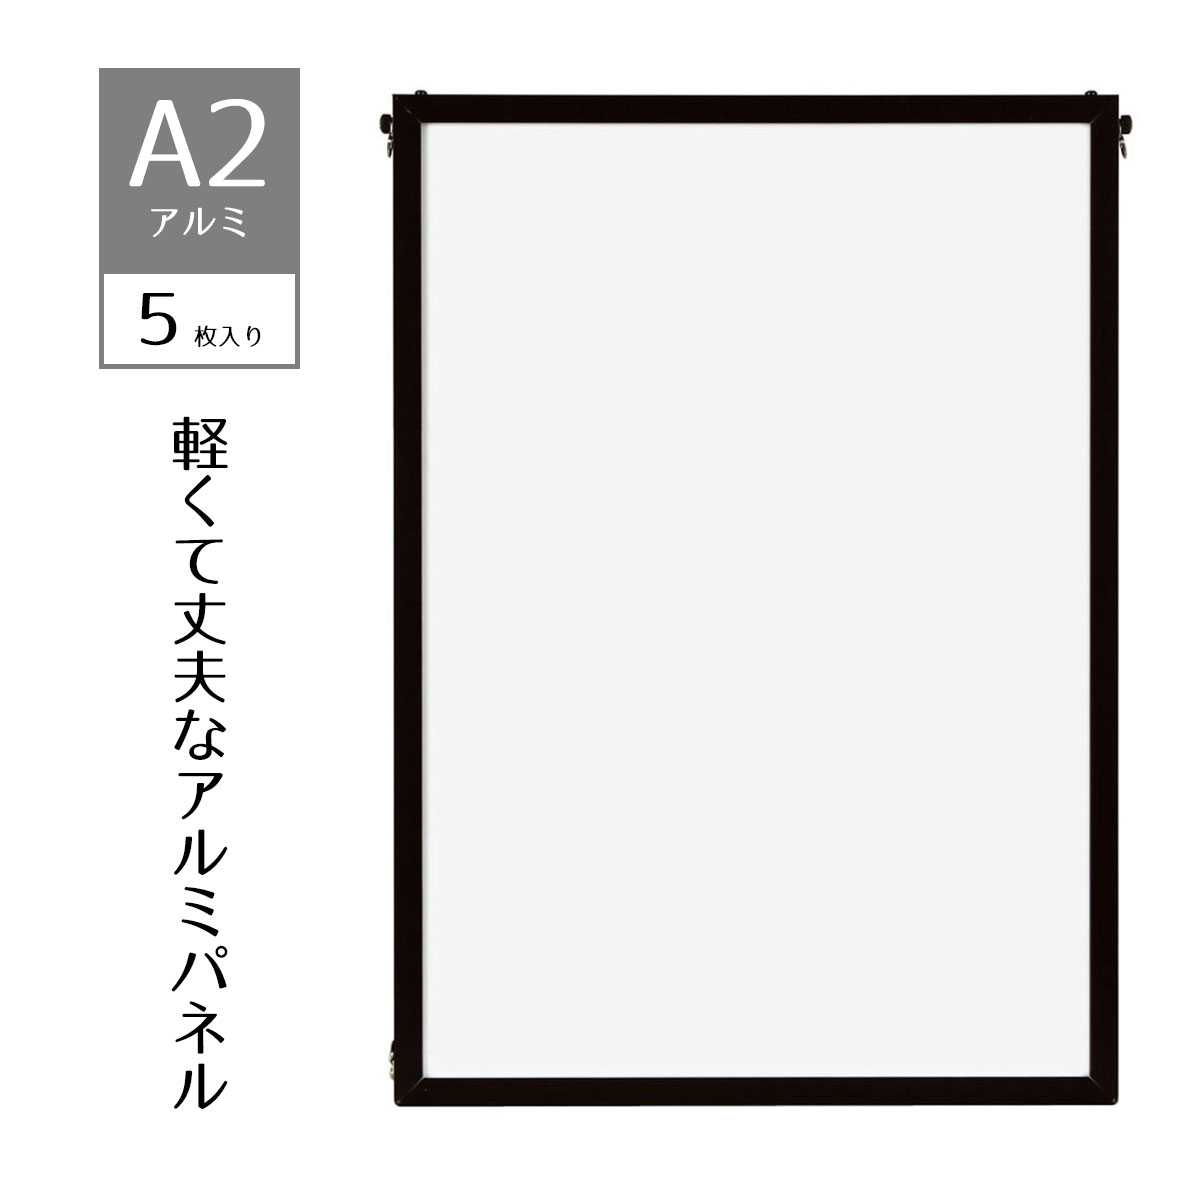 【5枚入り】ベストアルミパネル 黒 A2ポスター・写真・ポップなど幅広く利用できる、軽くて丈夫なアル..